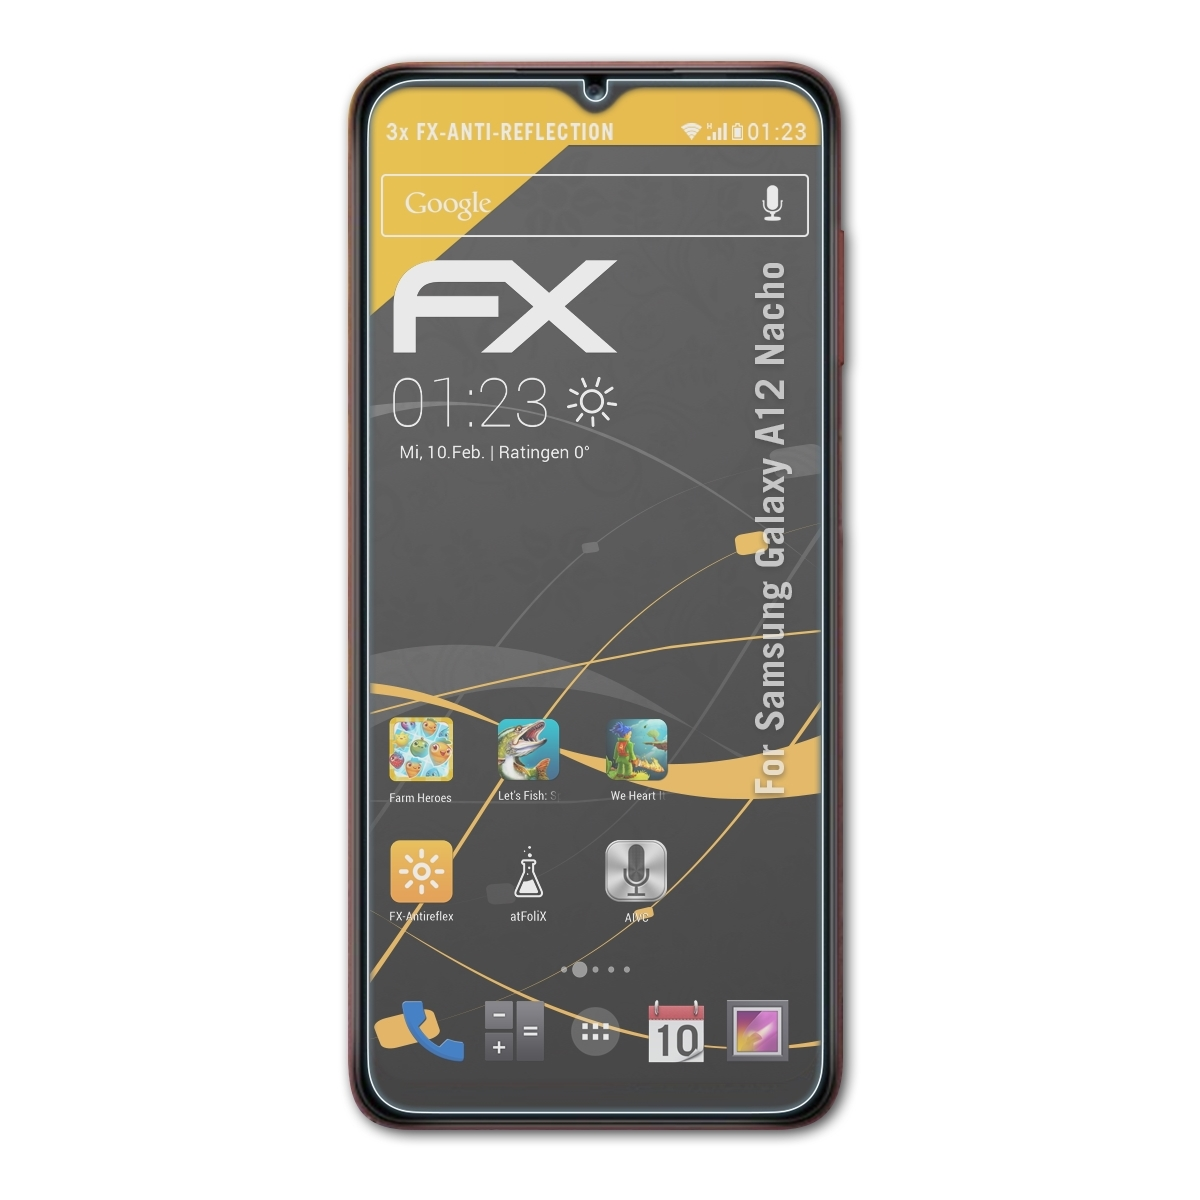 Samsung Nacho) 3x ATFOLIX Galaxy A12 FX-Antireflex Displayschutz(für